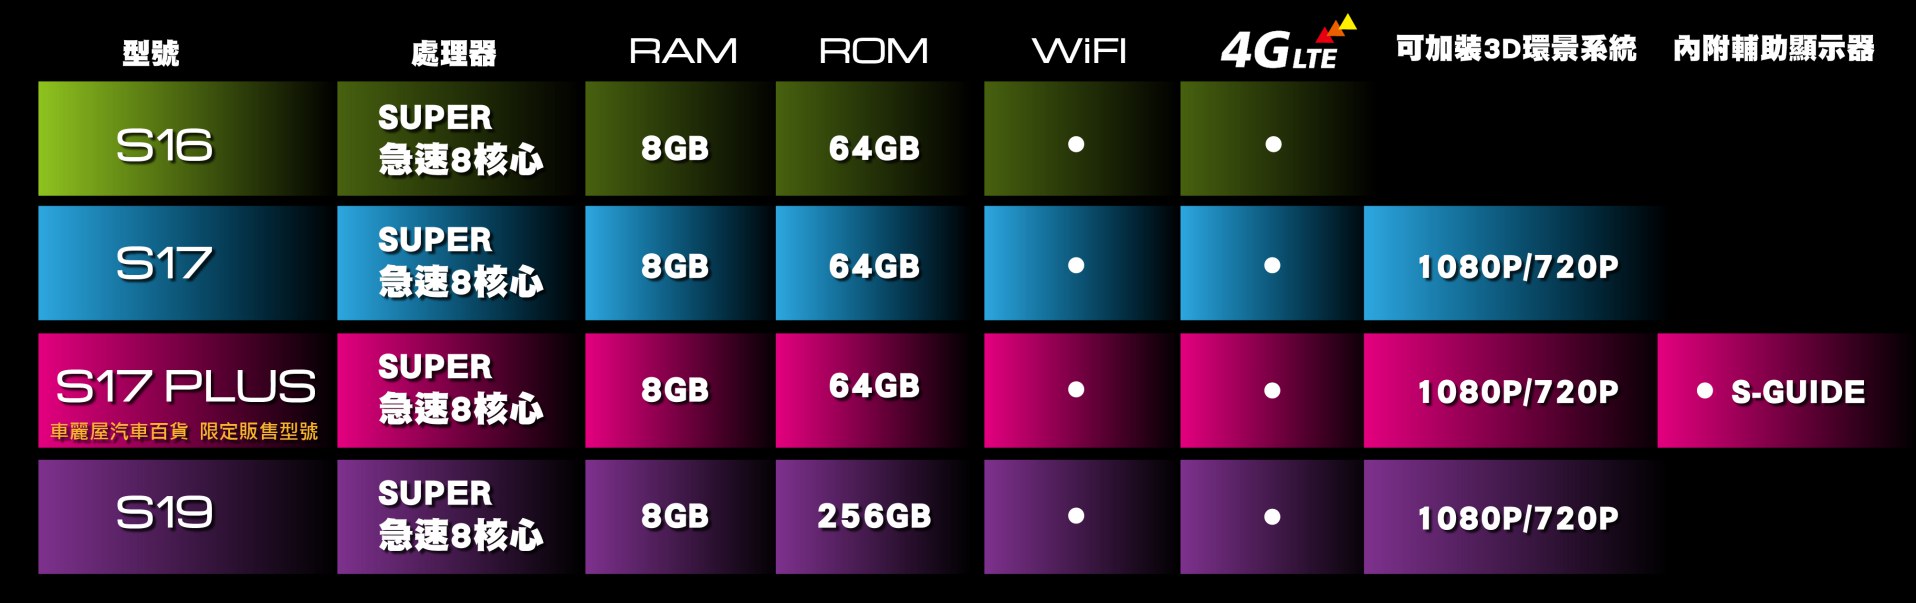 S 4G系列產品規格表